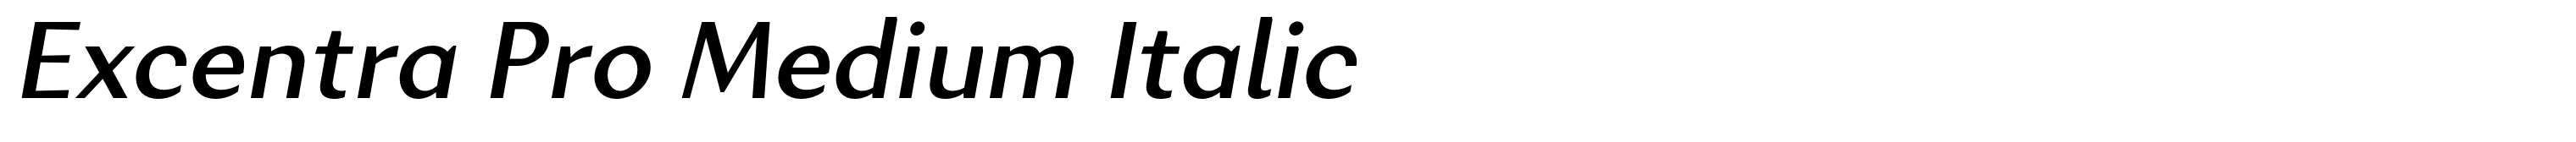 Excentra Pro Medium Italic